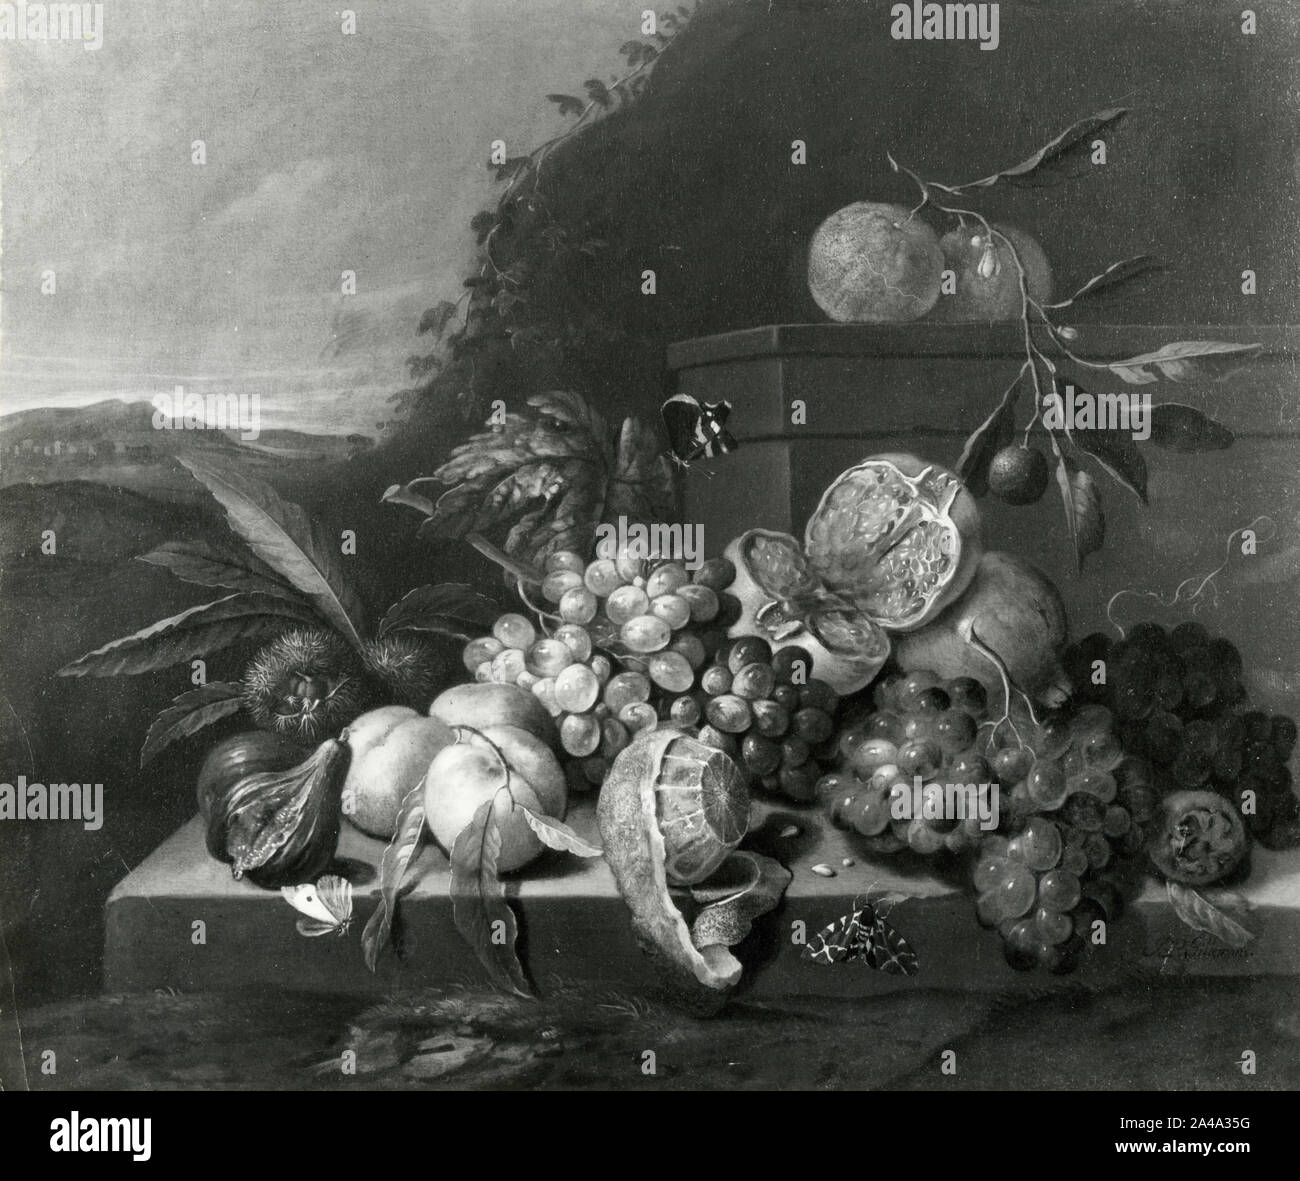 Nature morte, peinture de l'artiste flamand Jan Pauwel Gillemans le Jeune, 1930 Banque D'Images